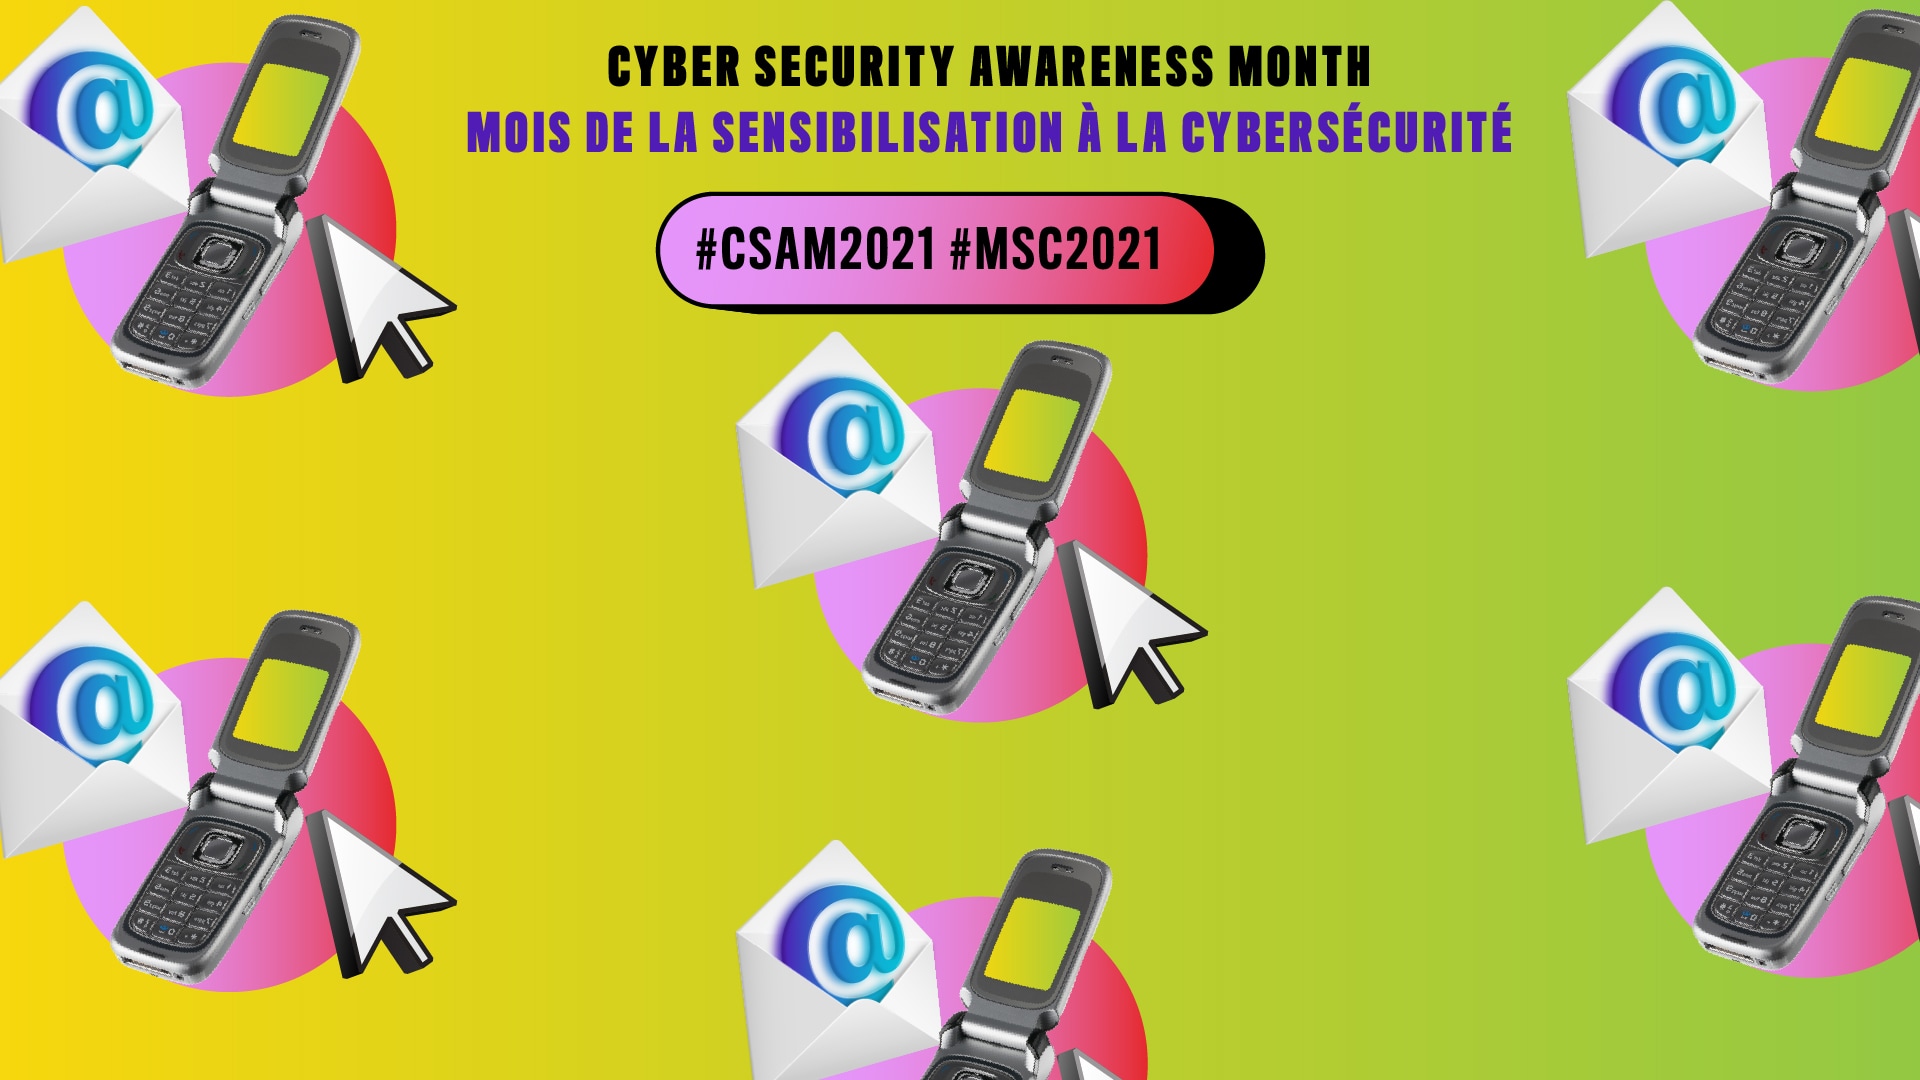 Arrière-plan jaune-vert avec des téléphones à rabat dans des cercles roses avec des curseurs en forme de flèche et des envelopes ouverts qui contiennent des @. Texte: Cyber Security Awareness Month, Mois de la sensibilisation à la cybersécurité, #CSAM2021 #MSC2021